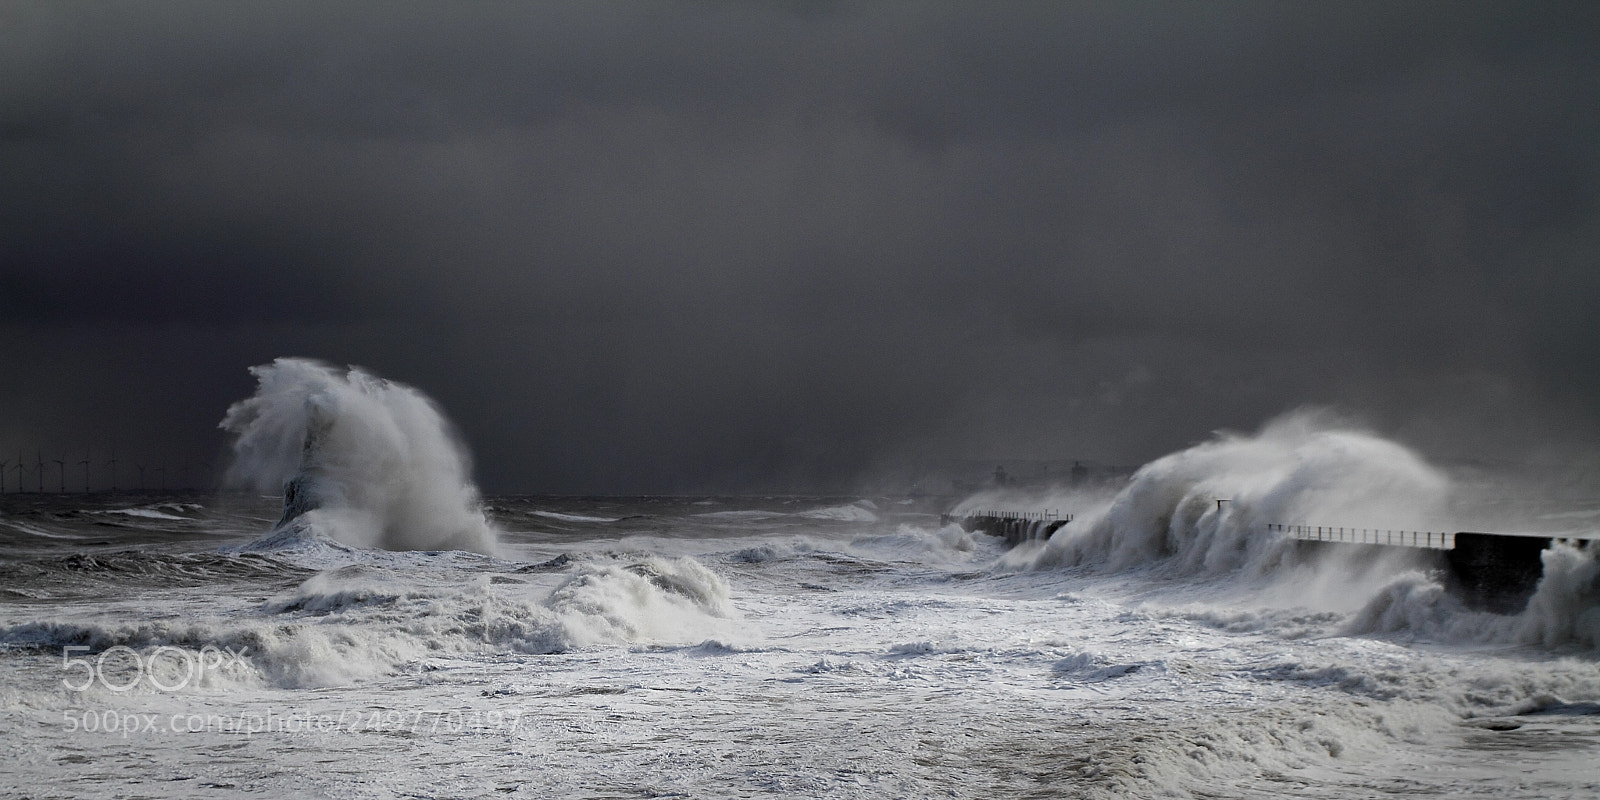 Canon EOS 7D sample photo. Rough seas at hartlepool photography